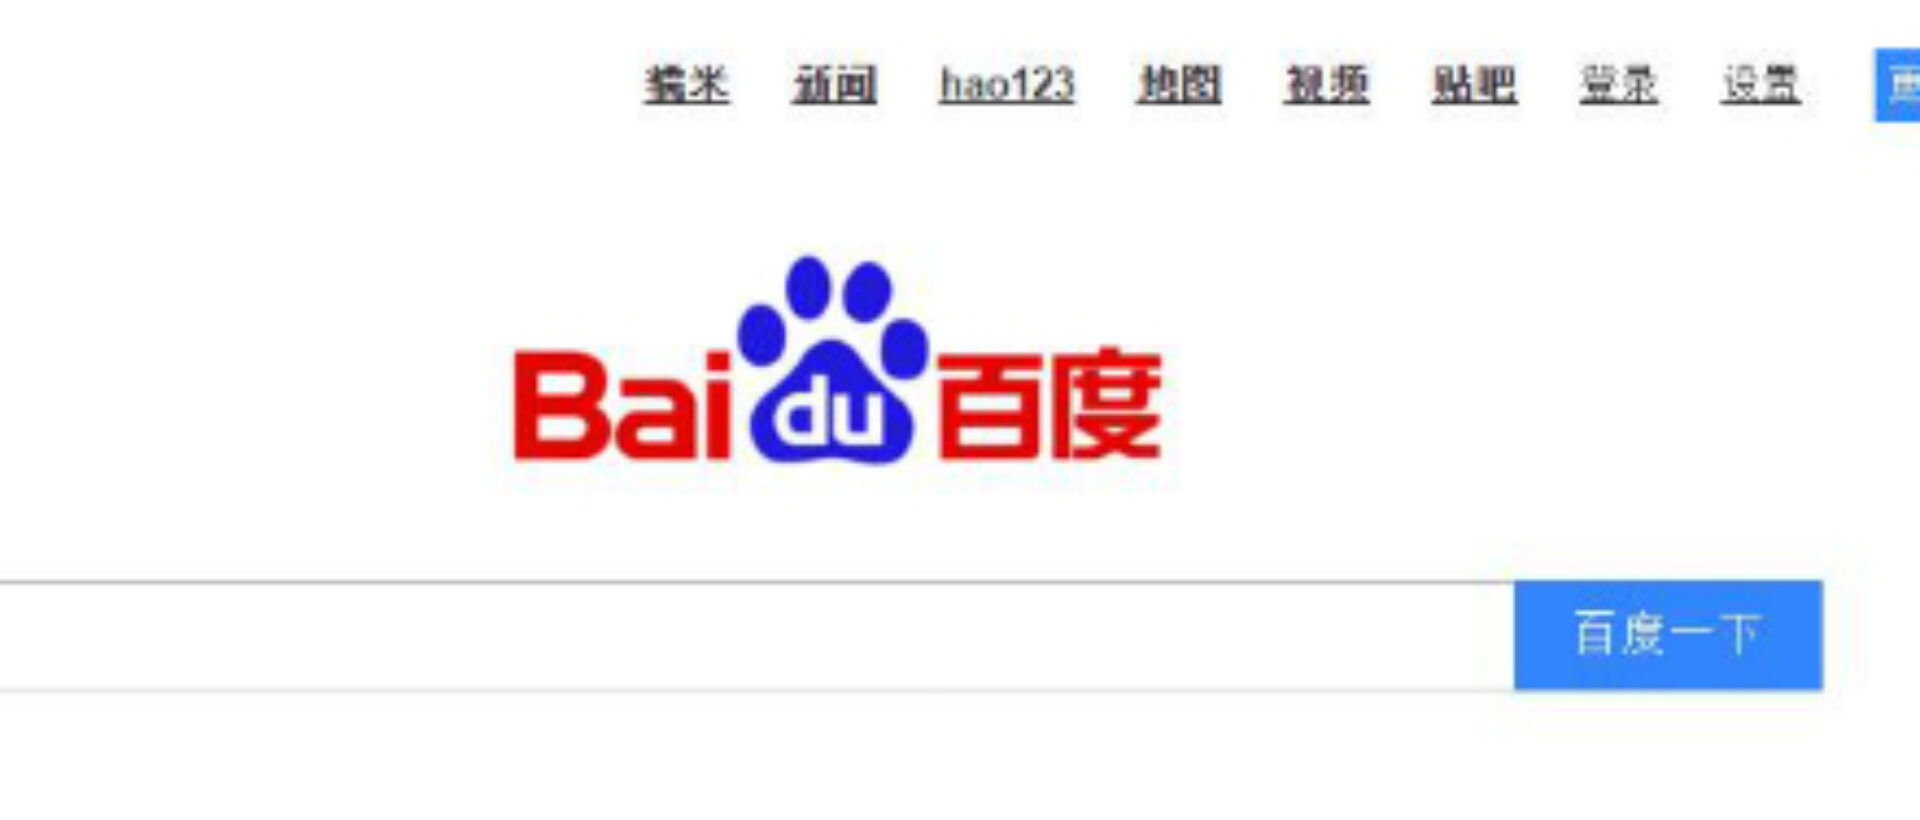 Landingpage www.baidu.com